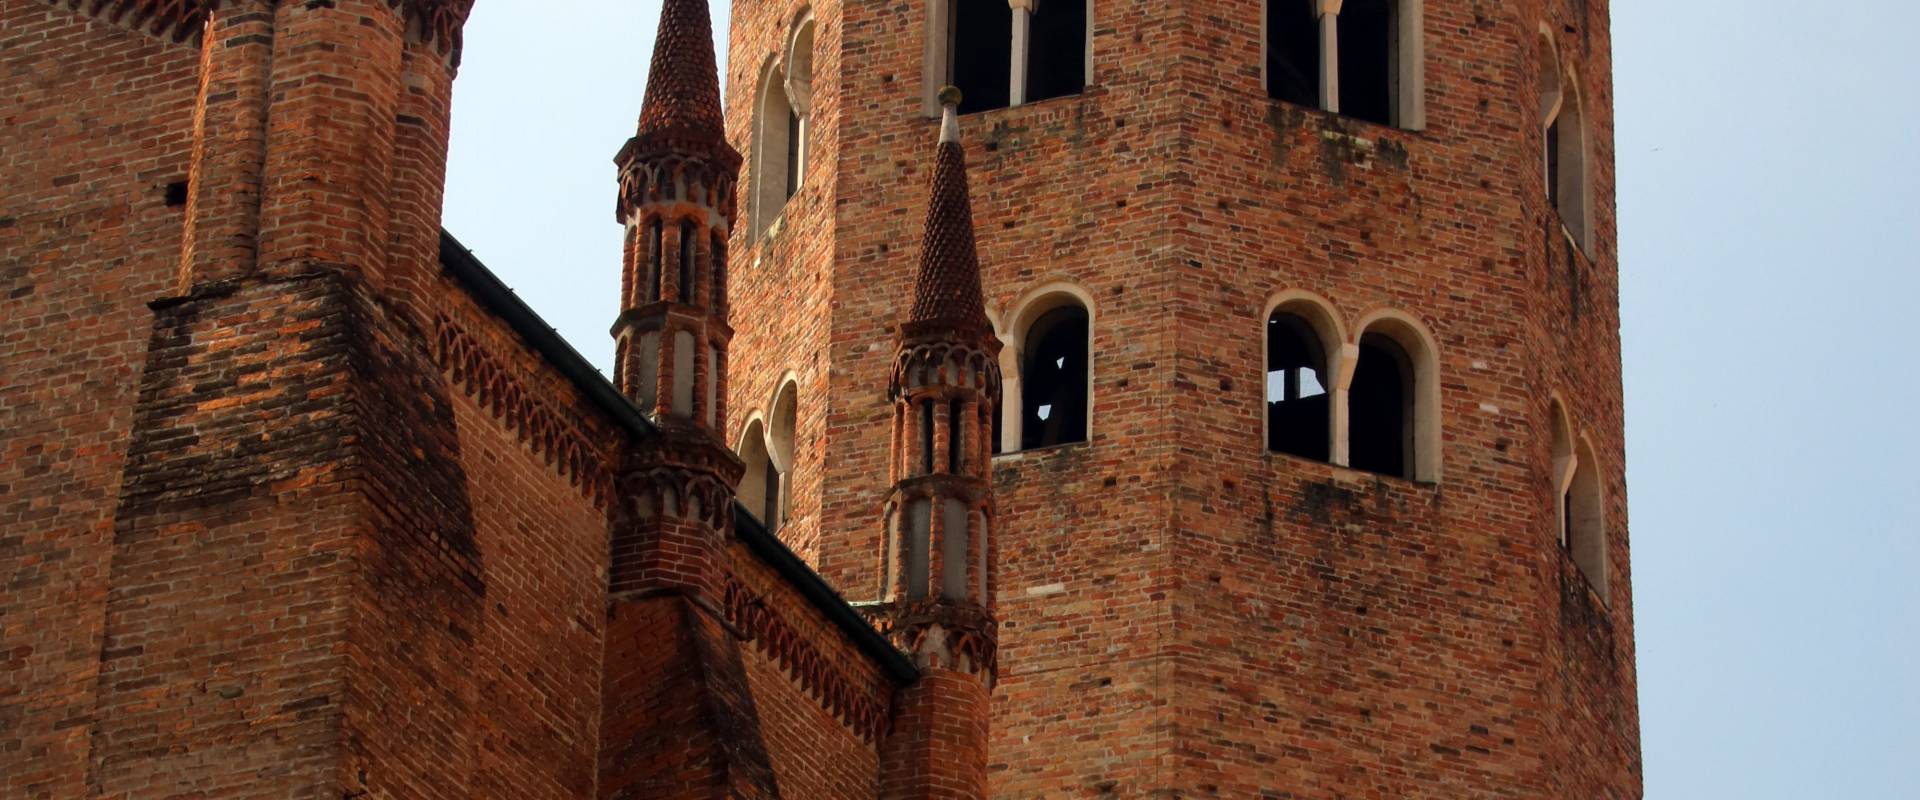 Basilica di Sant'Antonino (Piacenza), campanile 04 foto di Mongolo1984